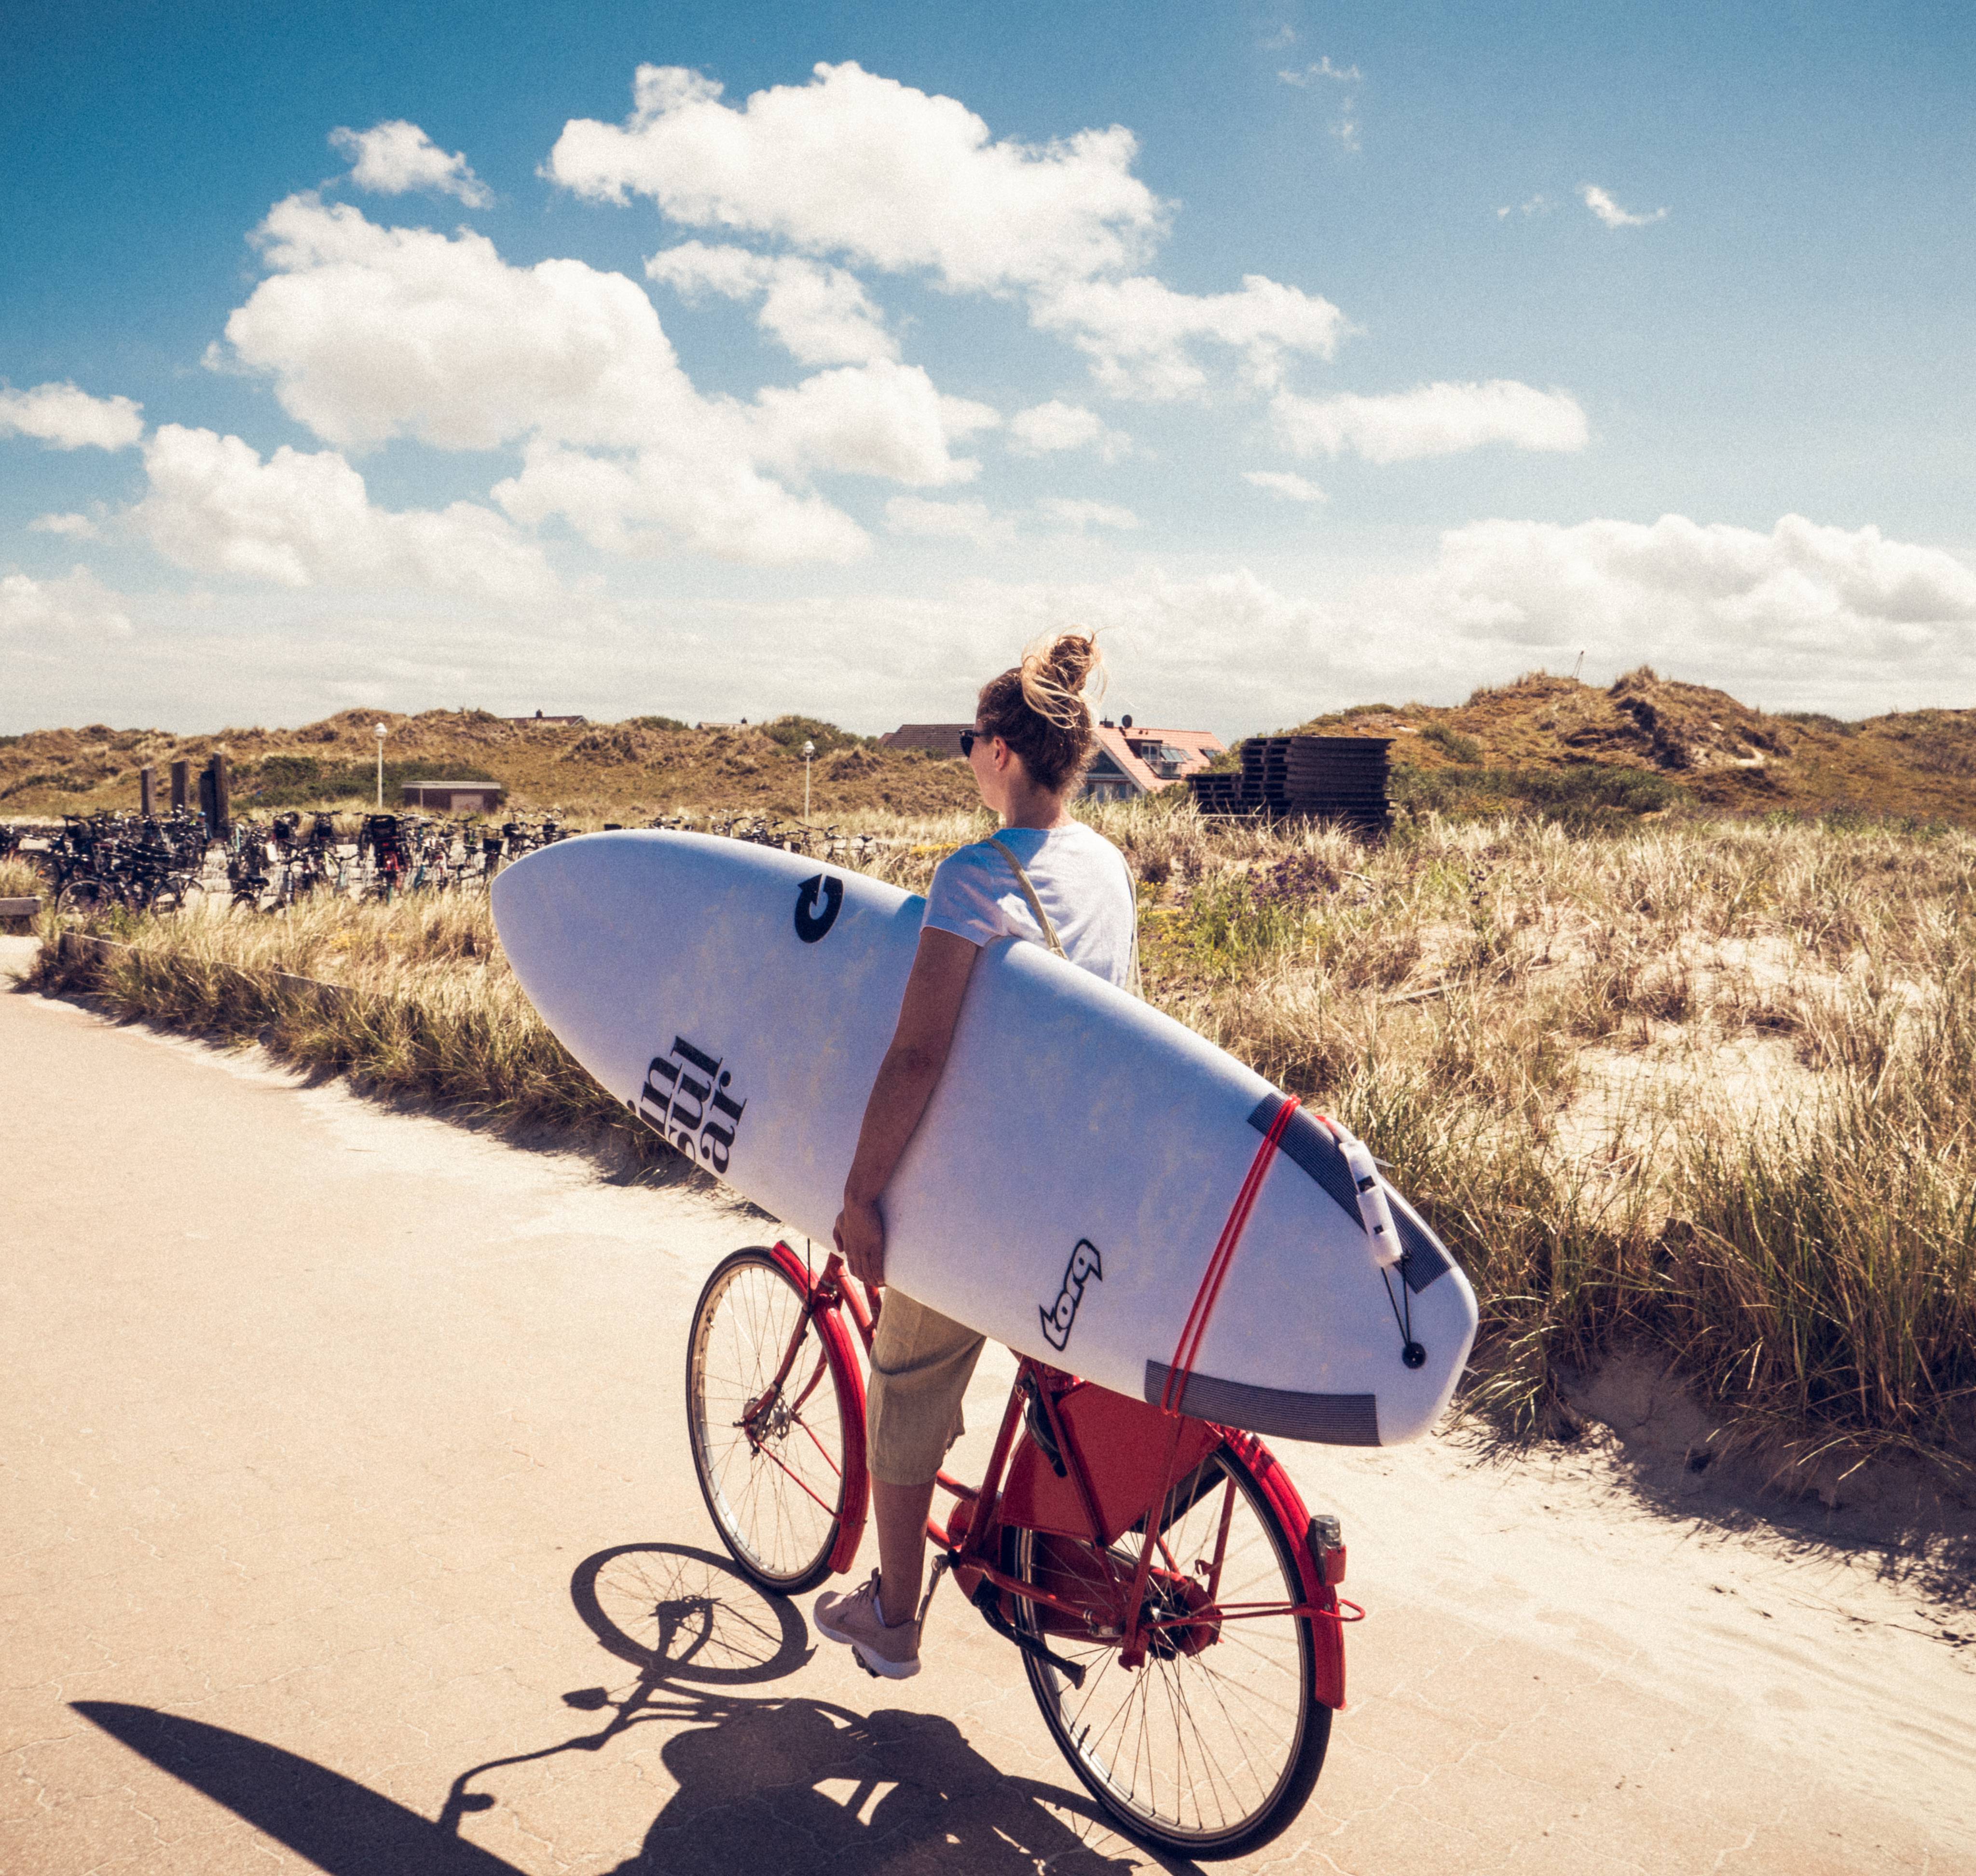 Frau fährt auf dem Rad mit Surfbrett unter dem Arm druch die Dünen